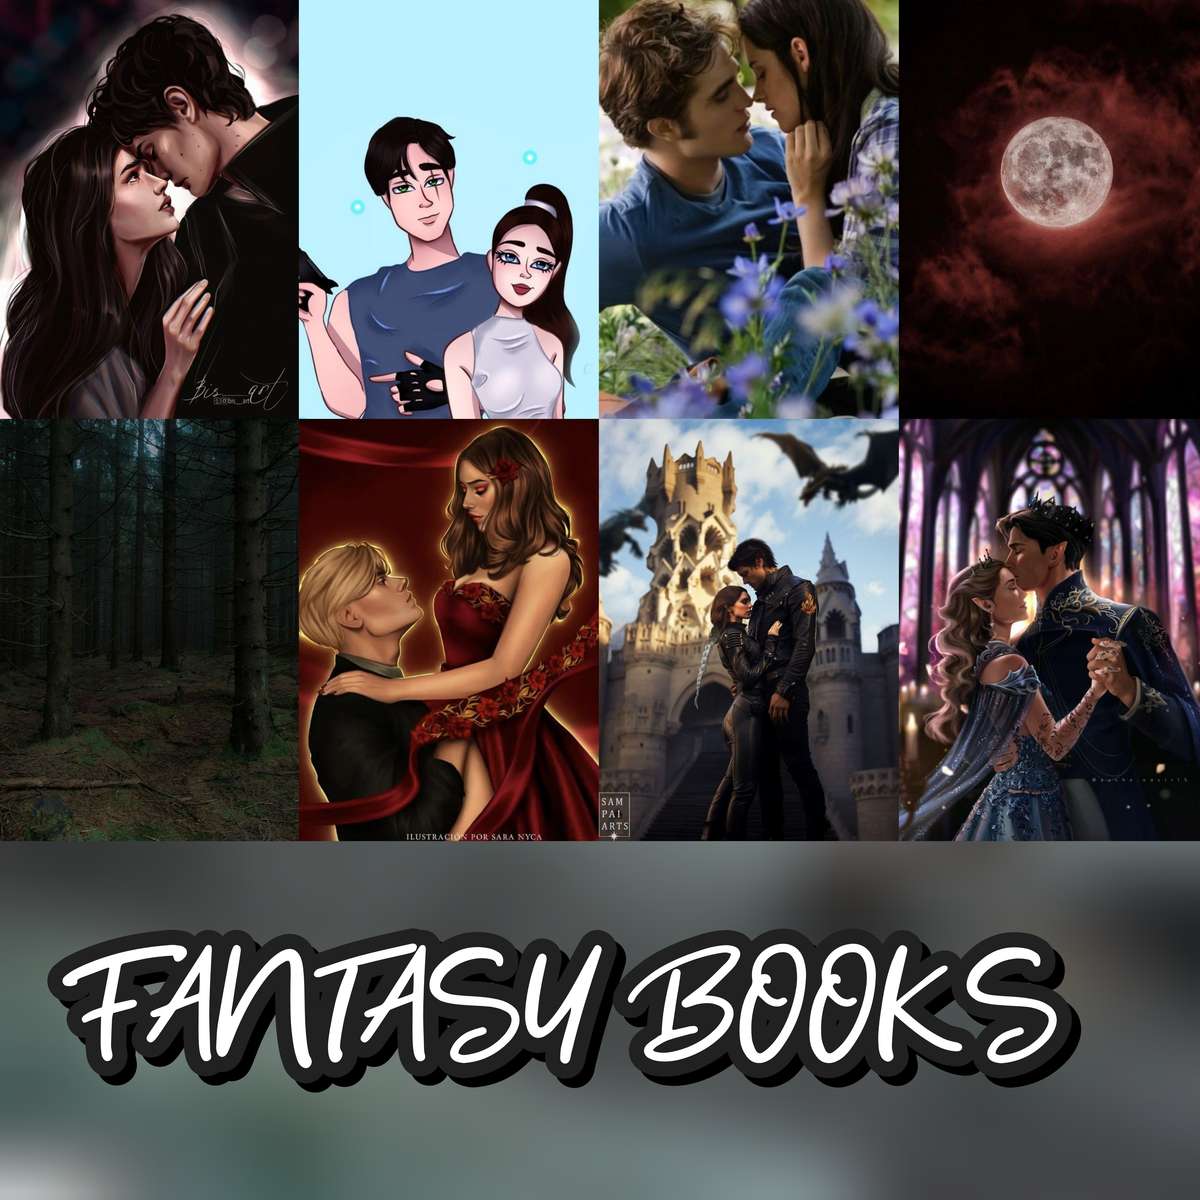 Fantasy böcker par pussel på nätet